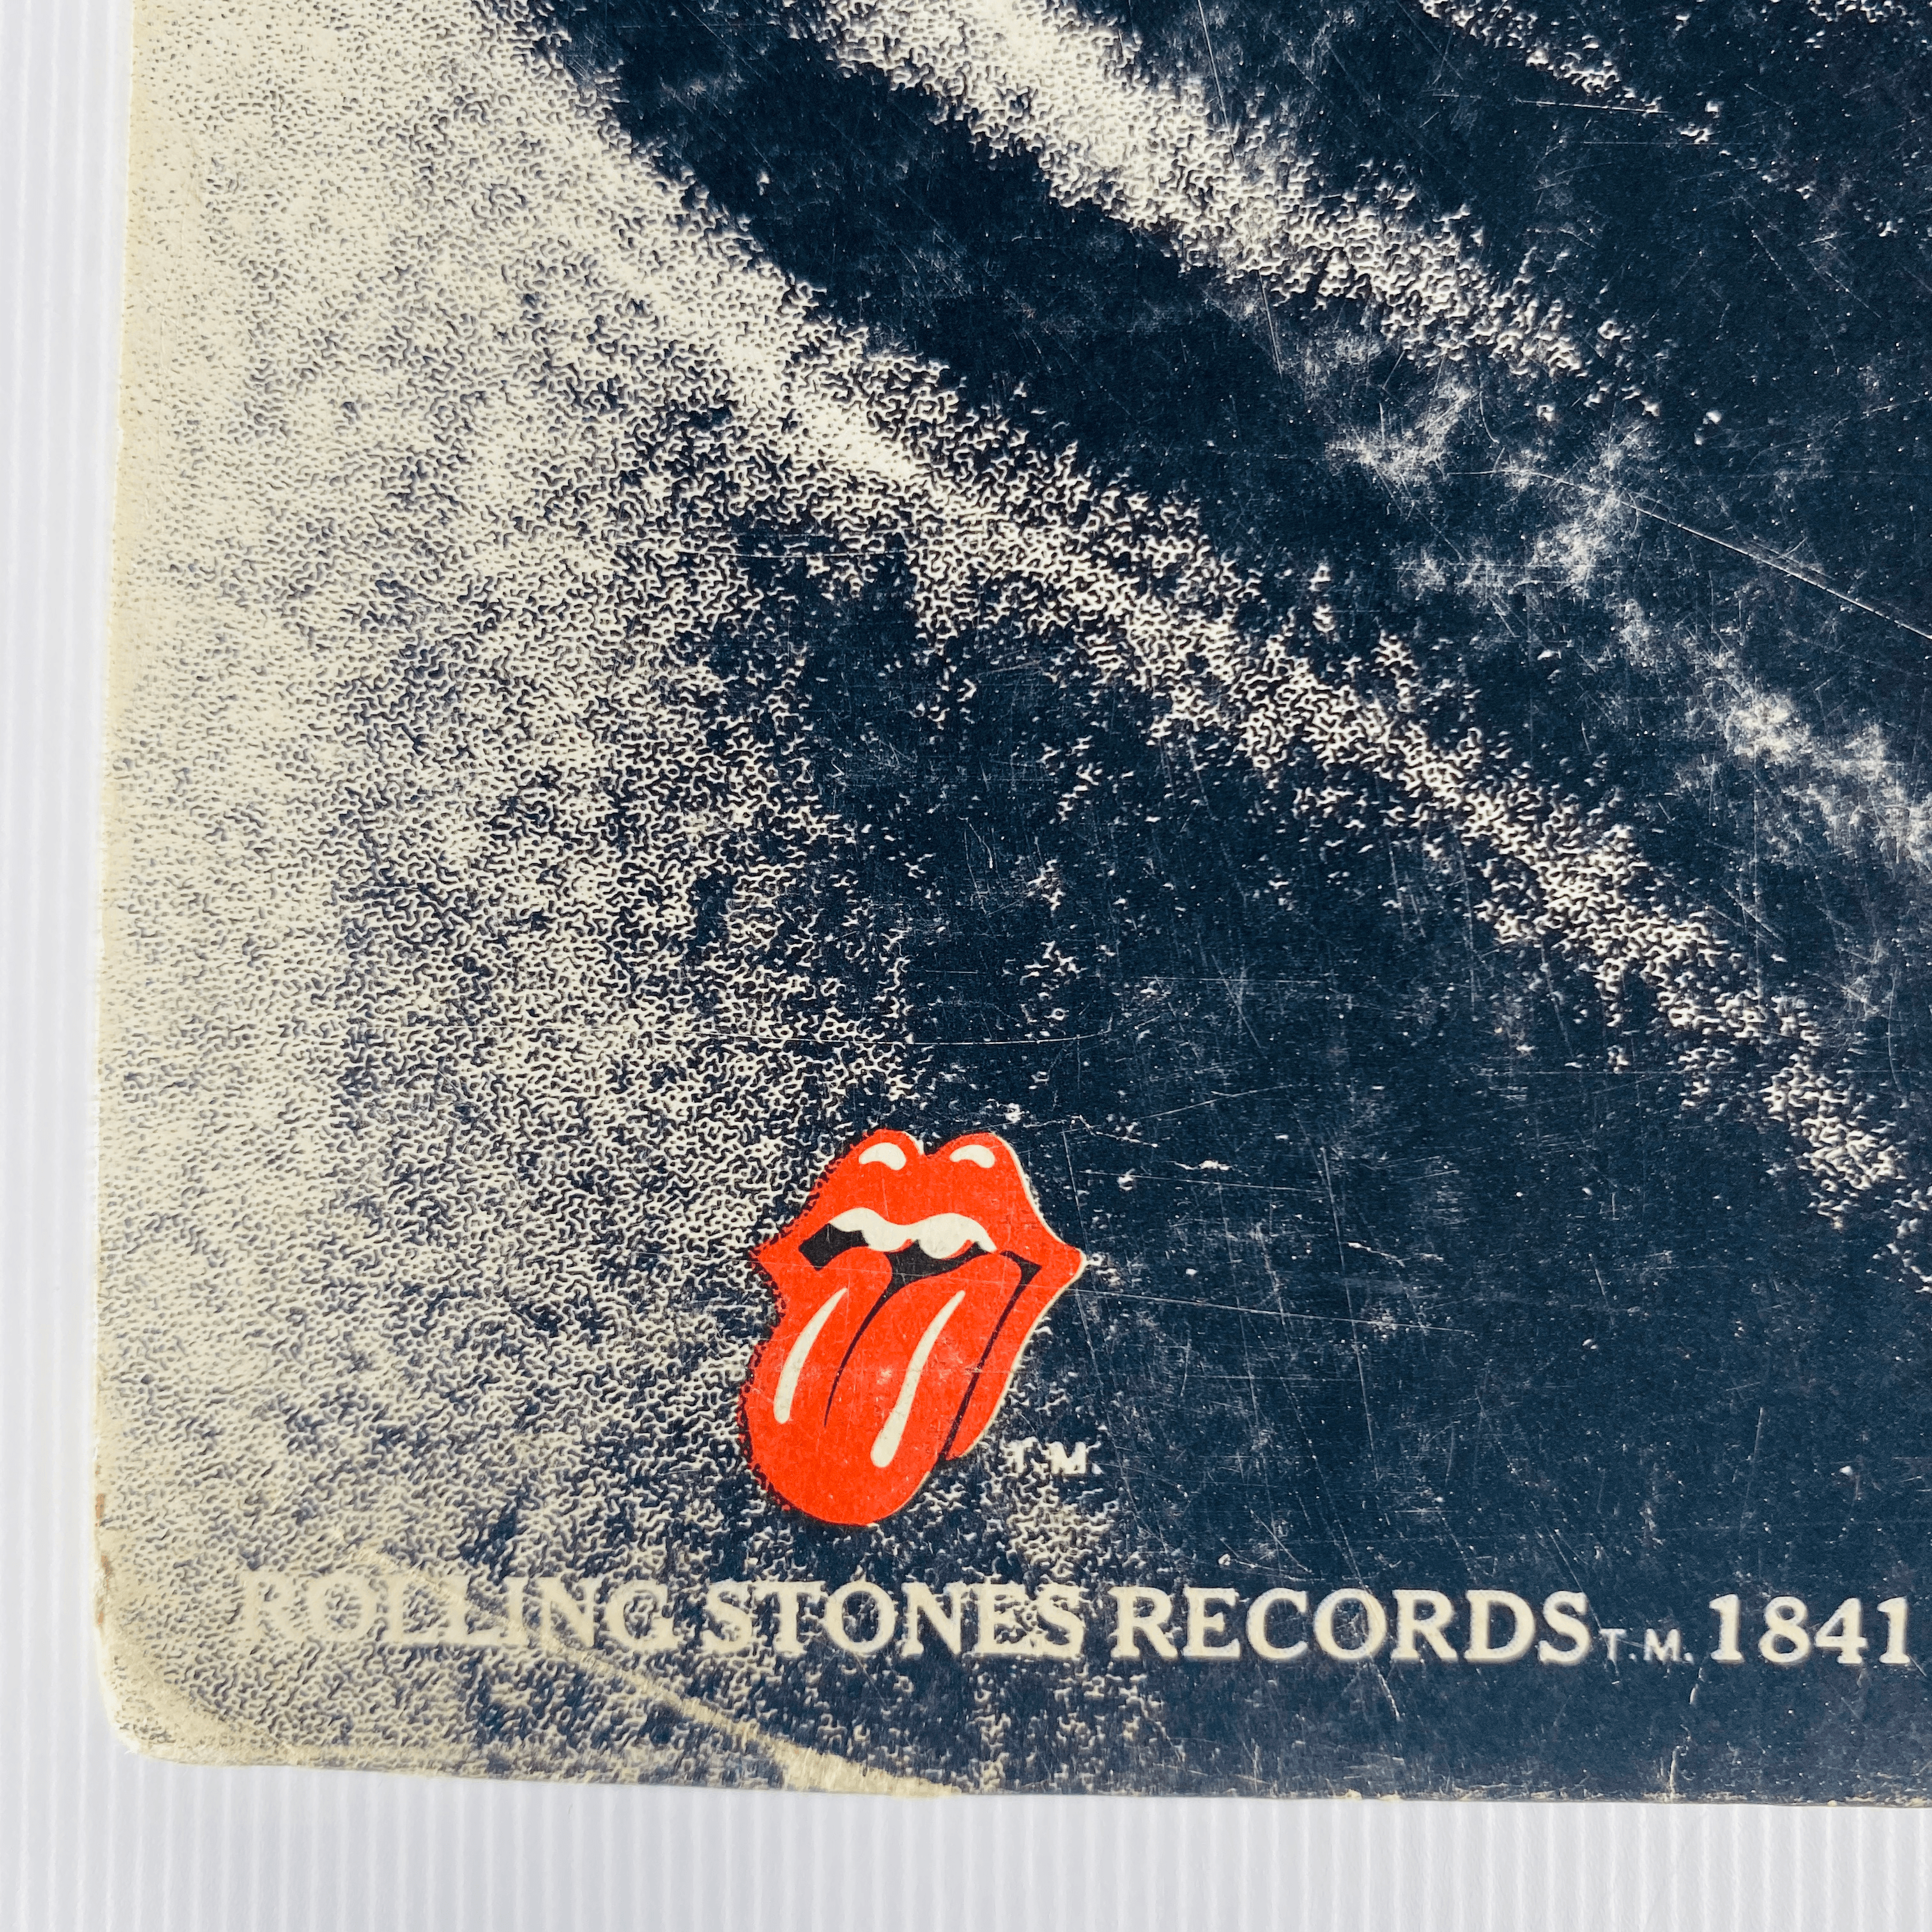 The Rolling Stones Sticky Fingers Album c. 1974 - Tuxedo Park Junk Shop